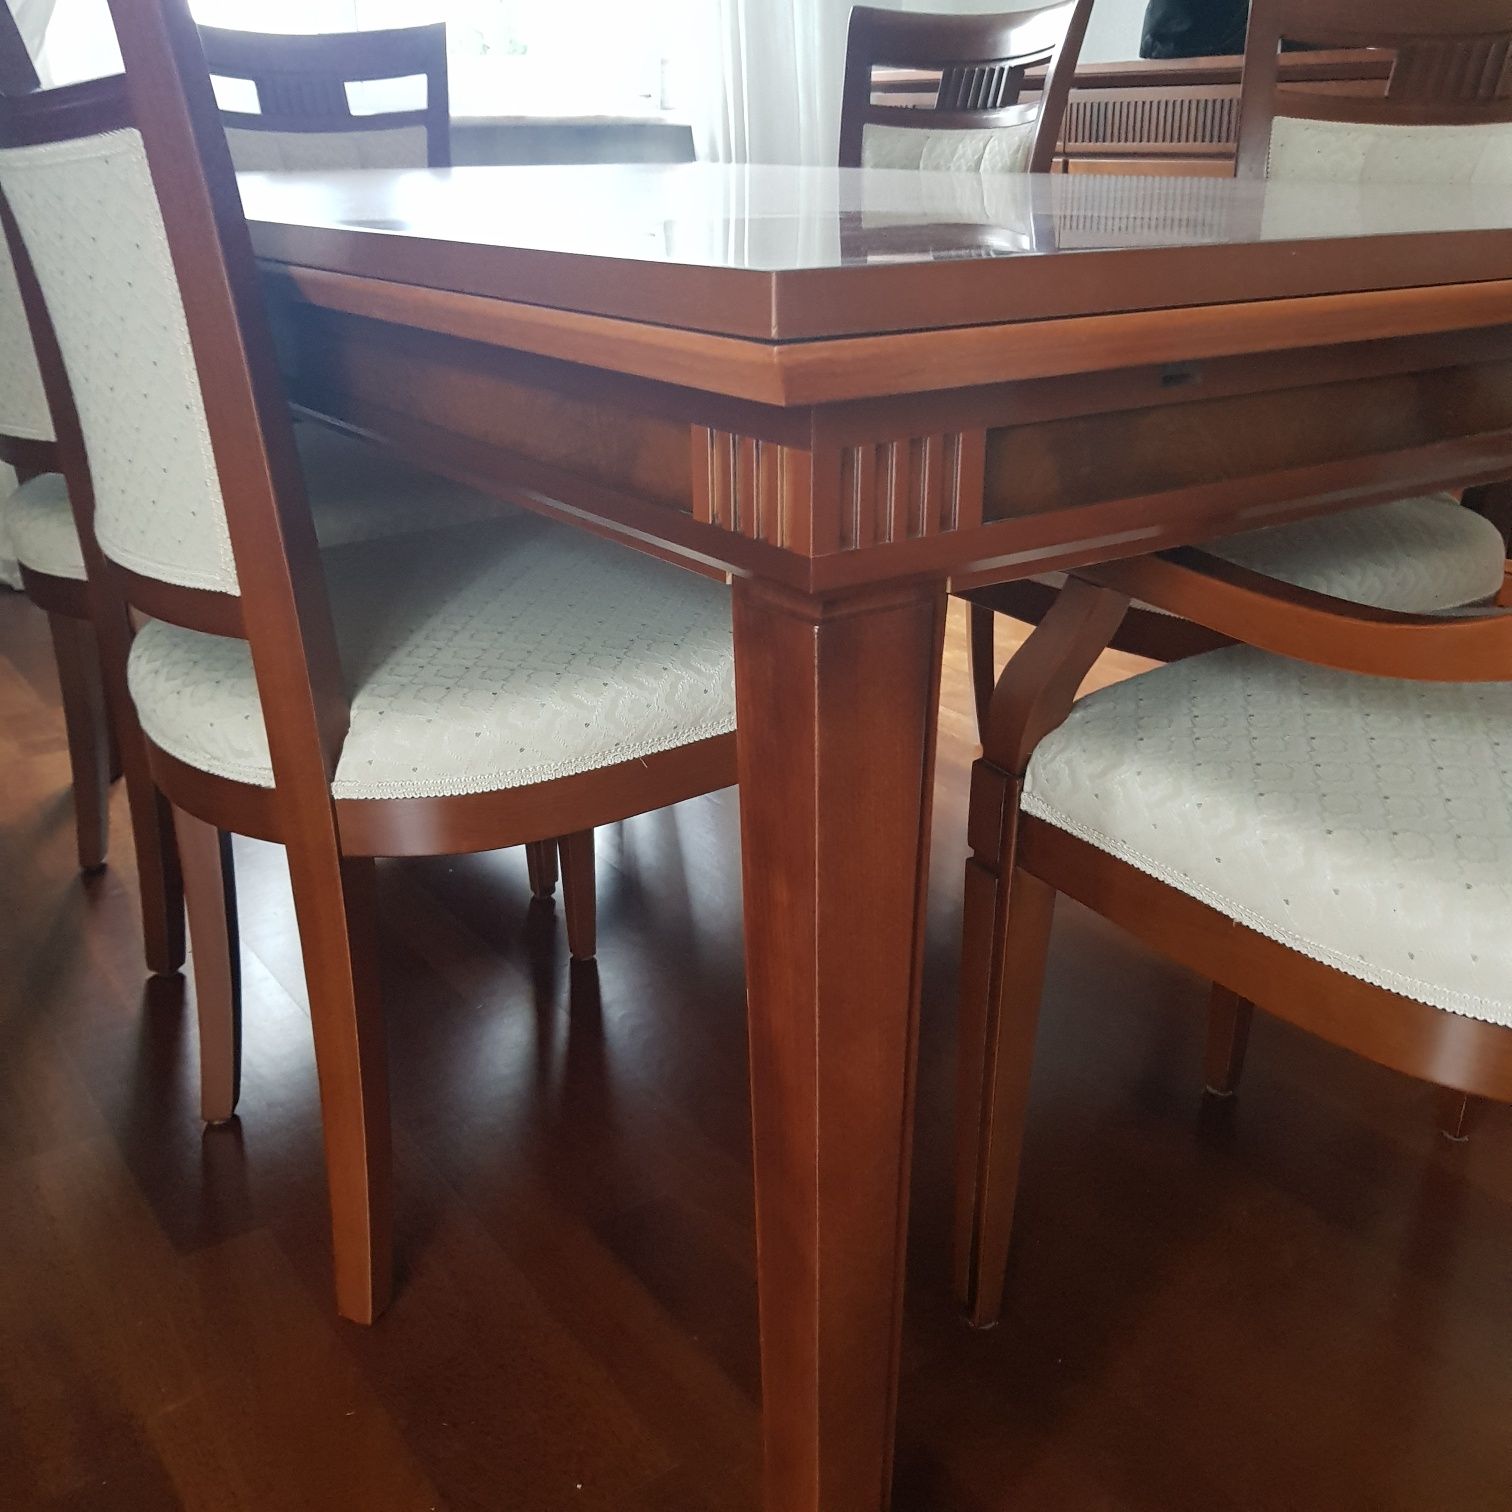 Stół z krzesłami, włoskie meble stylowe